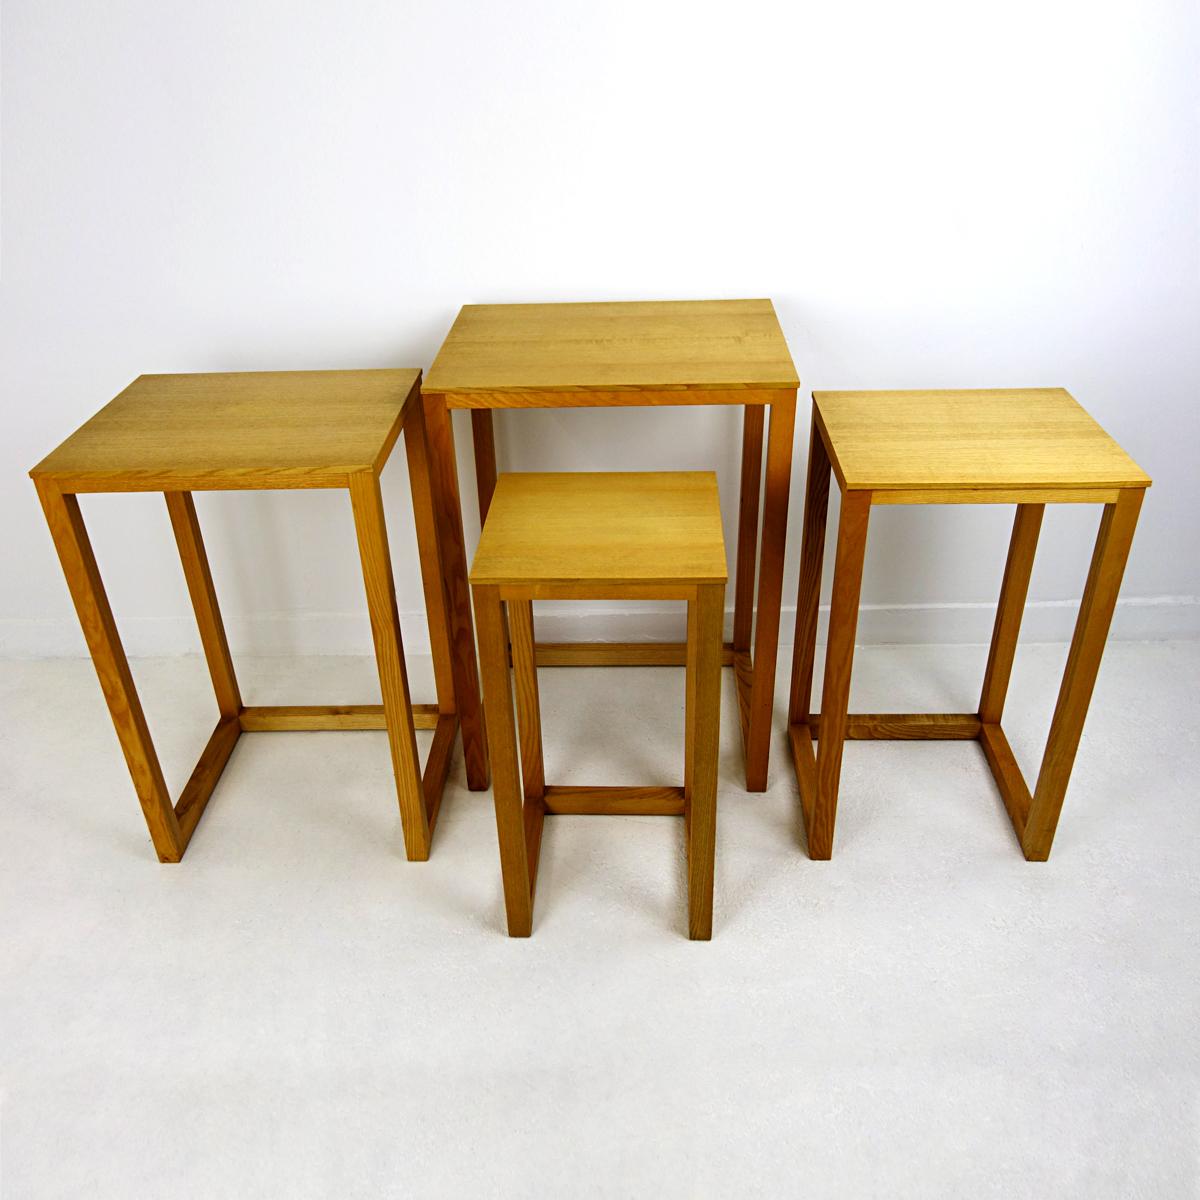 Sehr stilvolles Set aus vier Holztischen, die untereinander passen. 
Die Tische wurden Anfang des 20. Jahrhunderts von Josef Hoffmann für den österreichischen Hersteller Wittmann entworfen. Die meisten waren schwarz lackiert, diese Tische sind